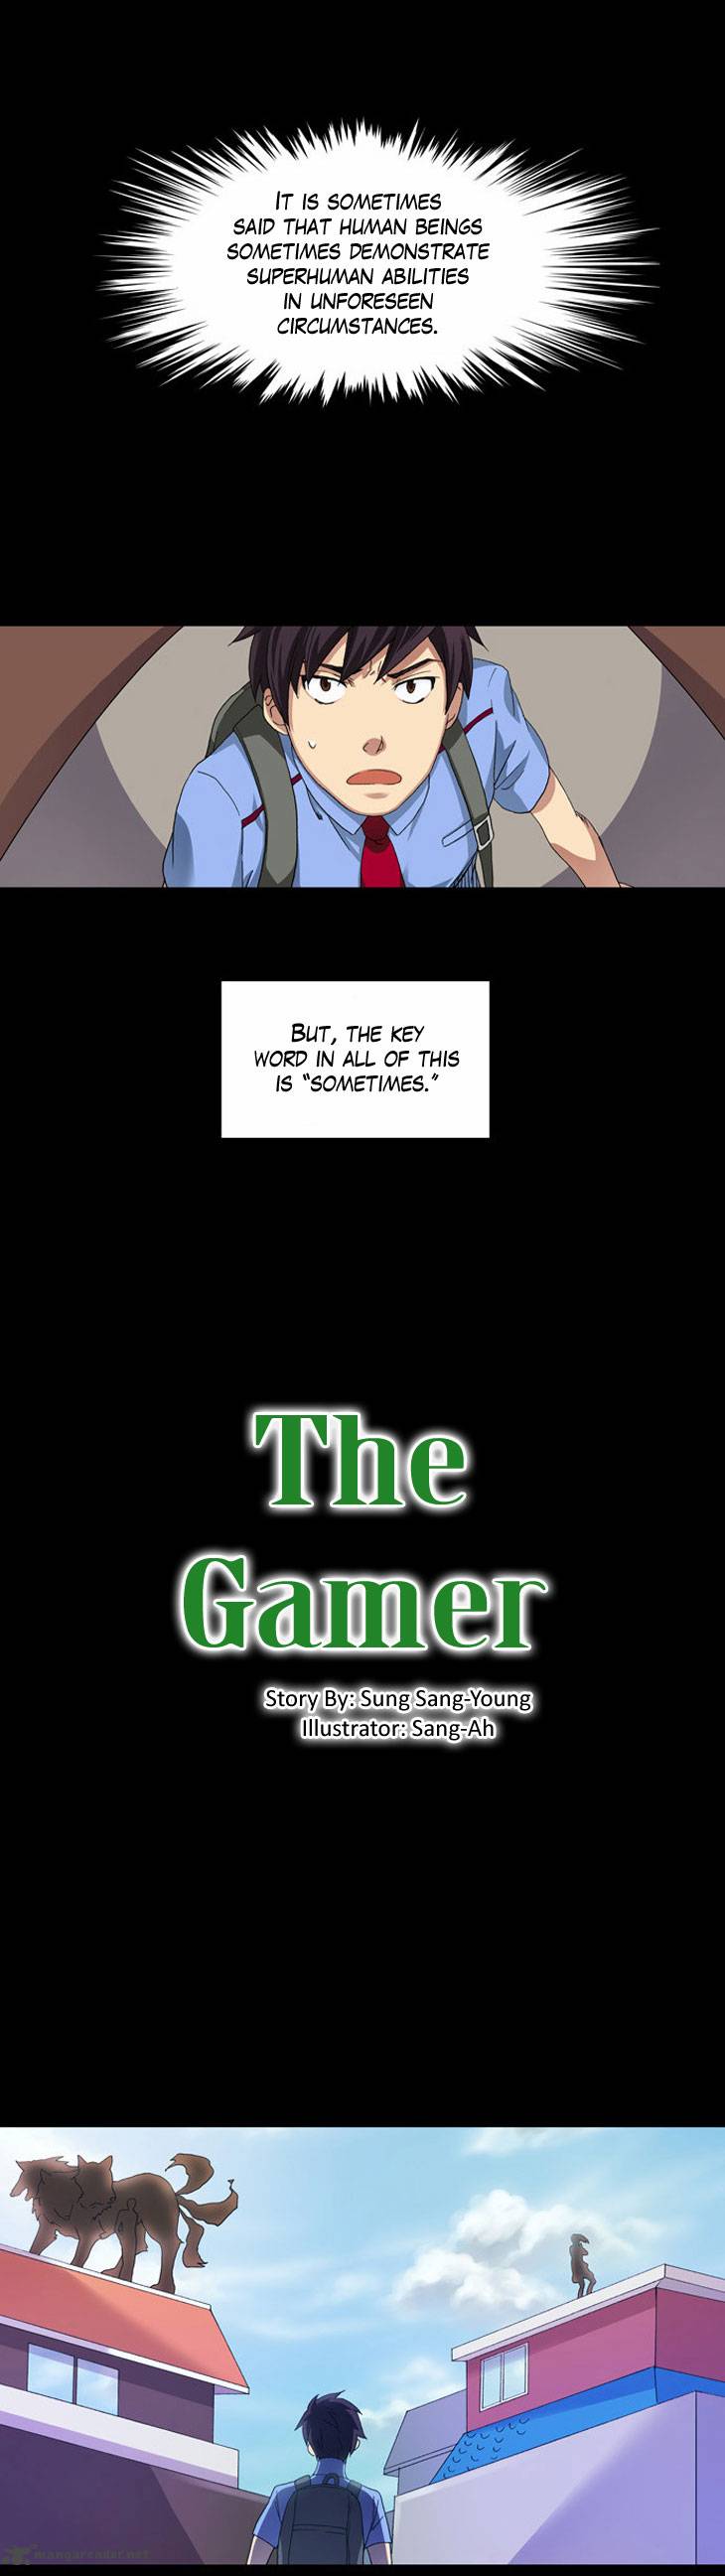 the_gamer_2_2